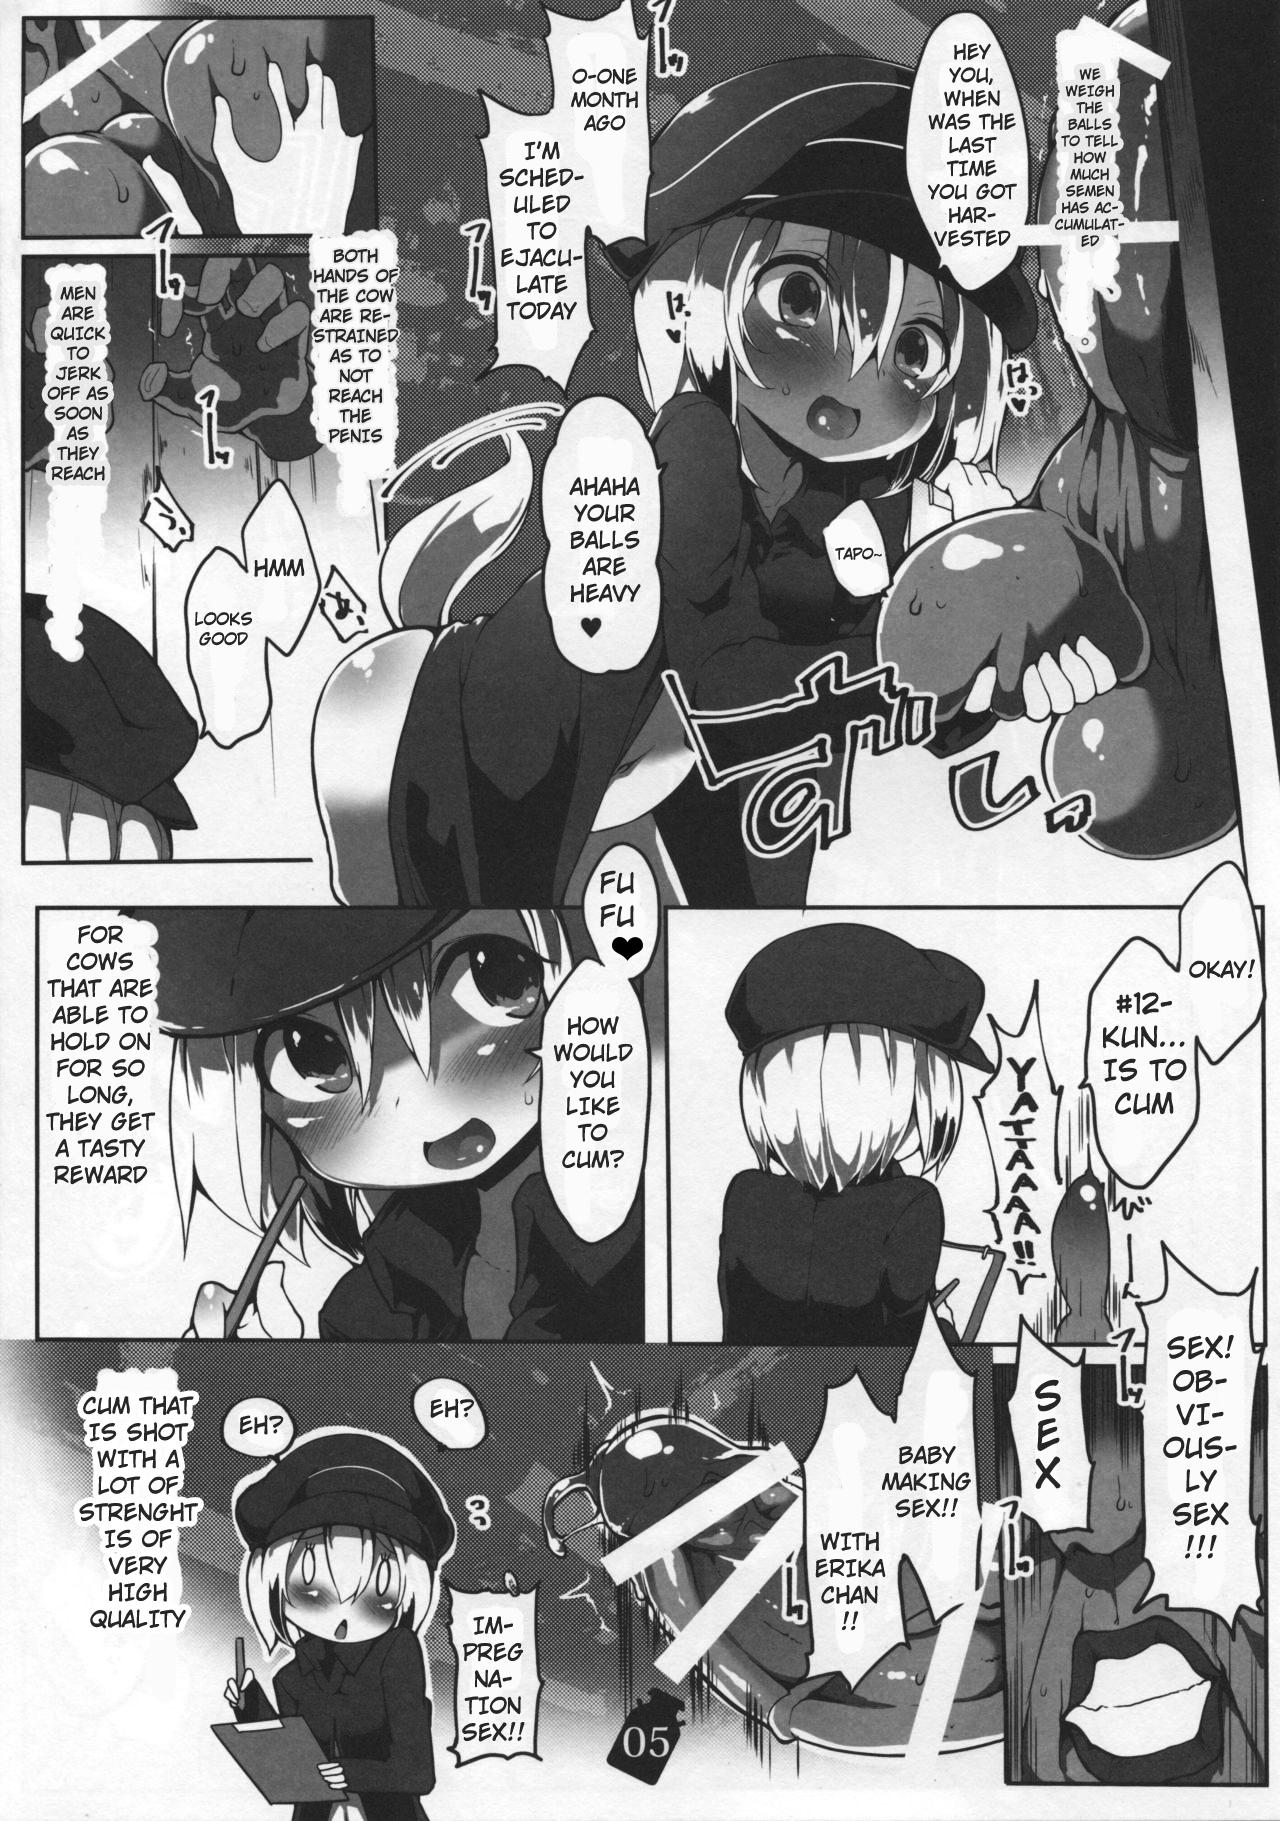 Food Tanoshii Seieki Bokujou - Strike witches Exgirlfriend - Page 7